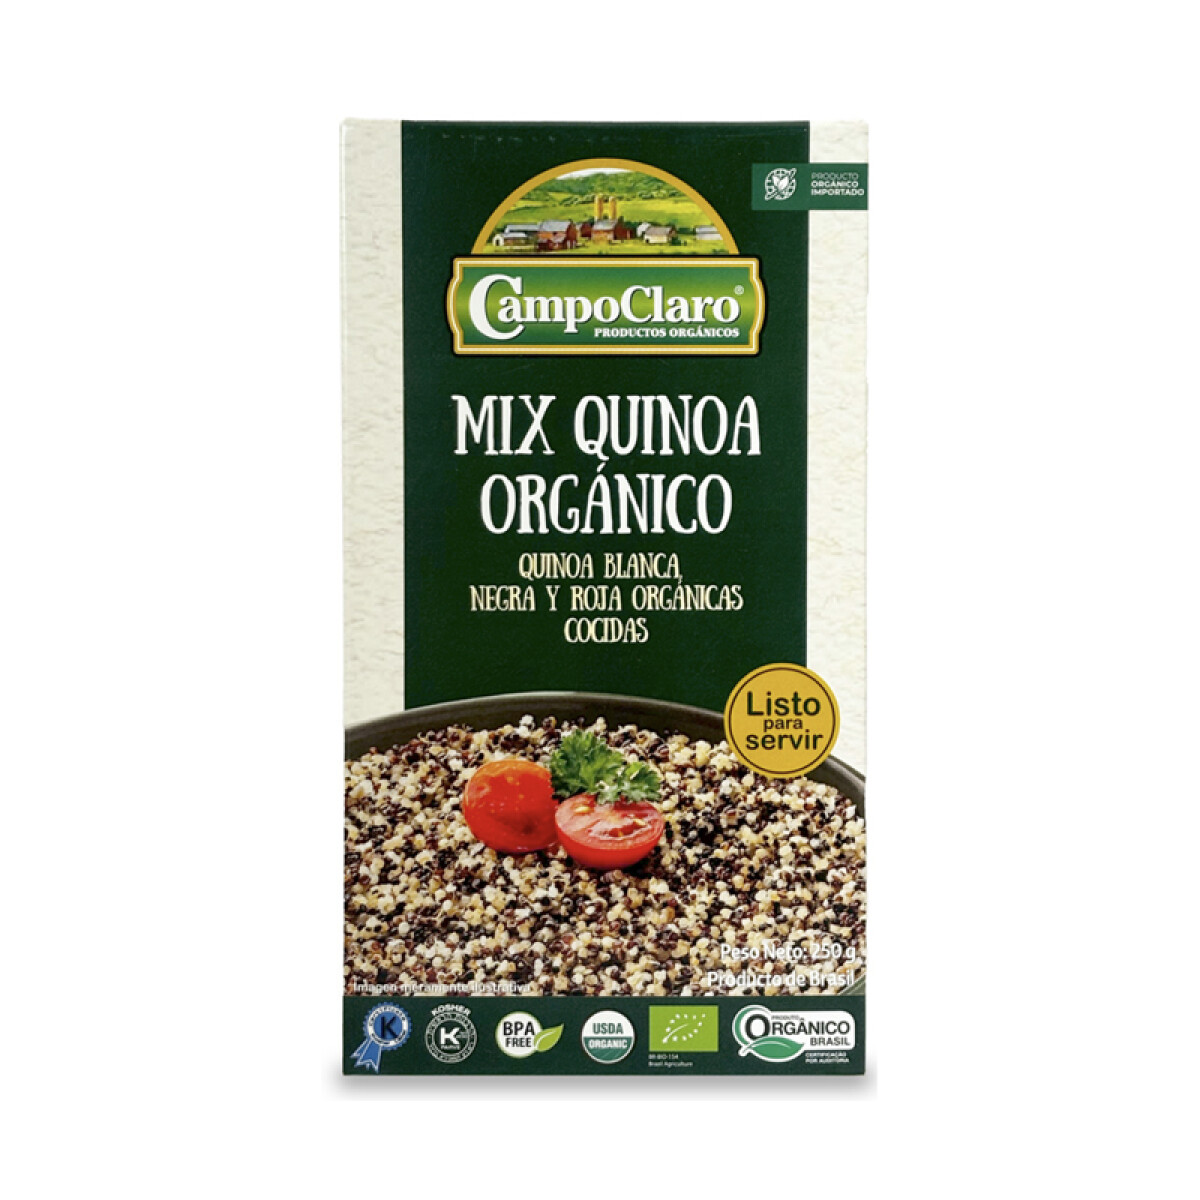 Mix quinoa cocido 250g Campo Claro 